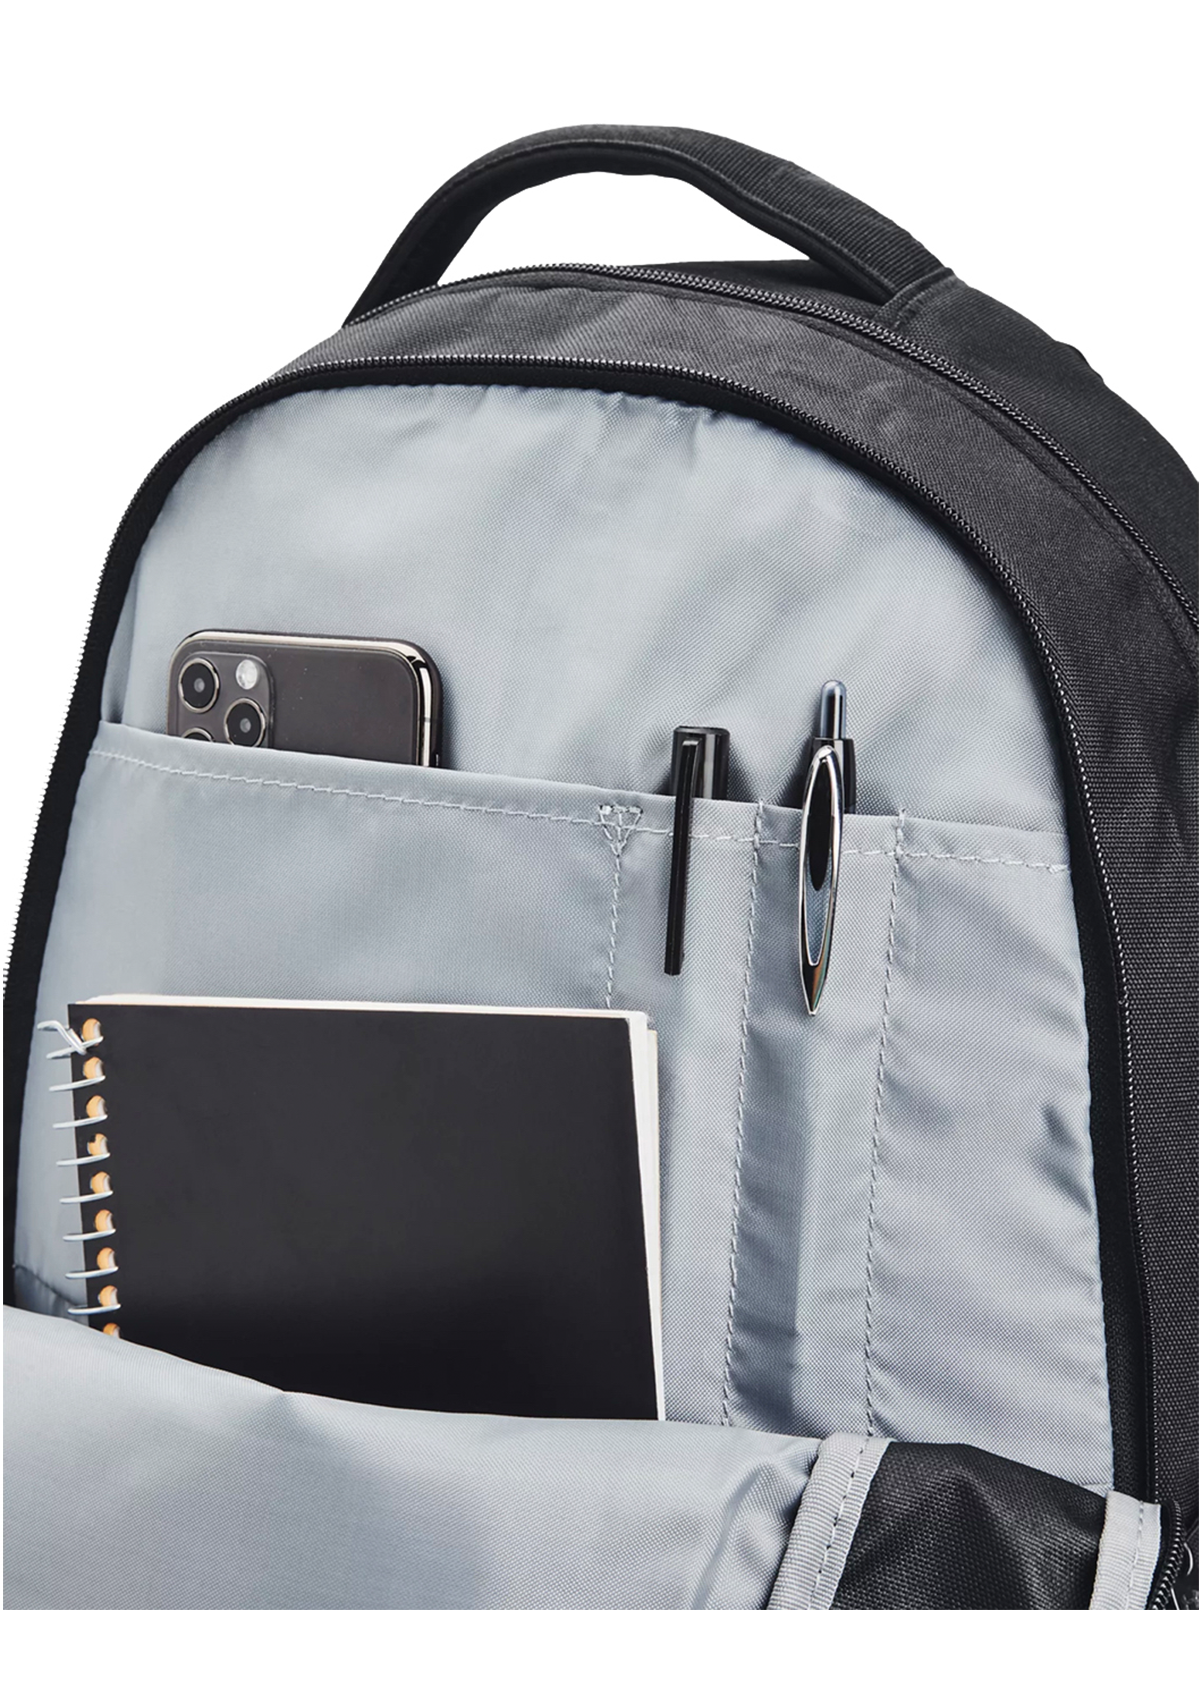 UA Hustle 5.5 Backpack Black Silver